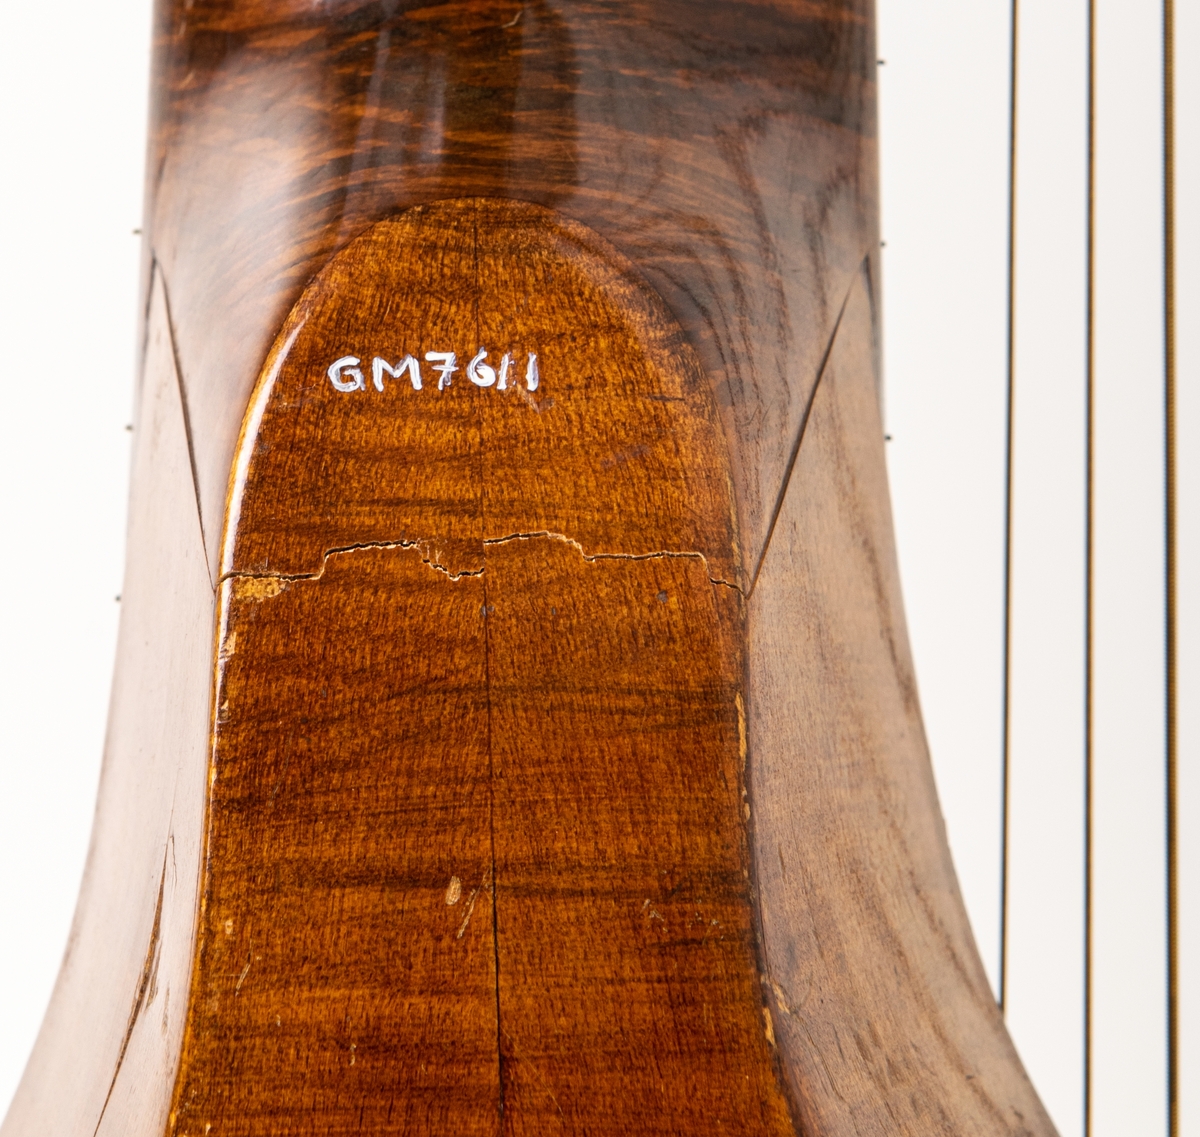 Basluta, tenorbas, med flat botten, tillverkad av Peter Kraft, Stockholm nr 252, Anno 1786.